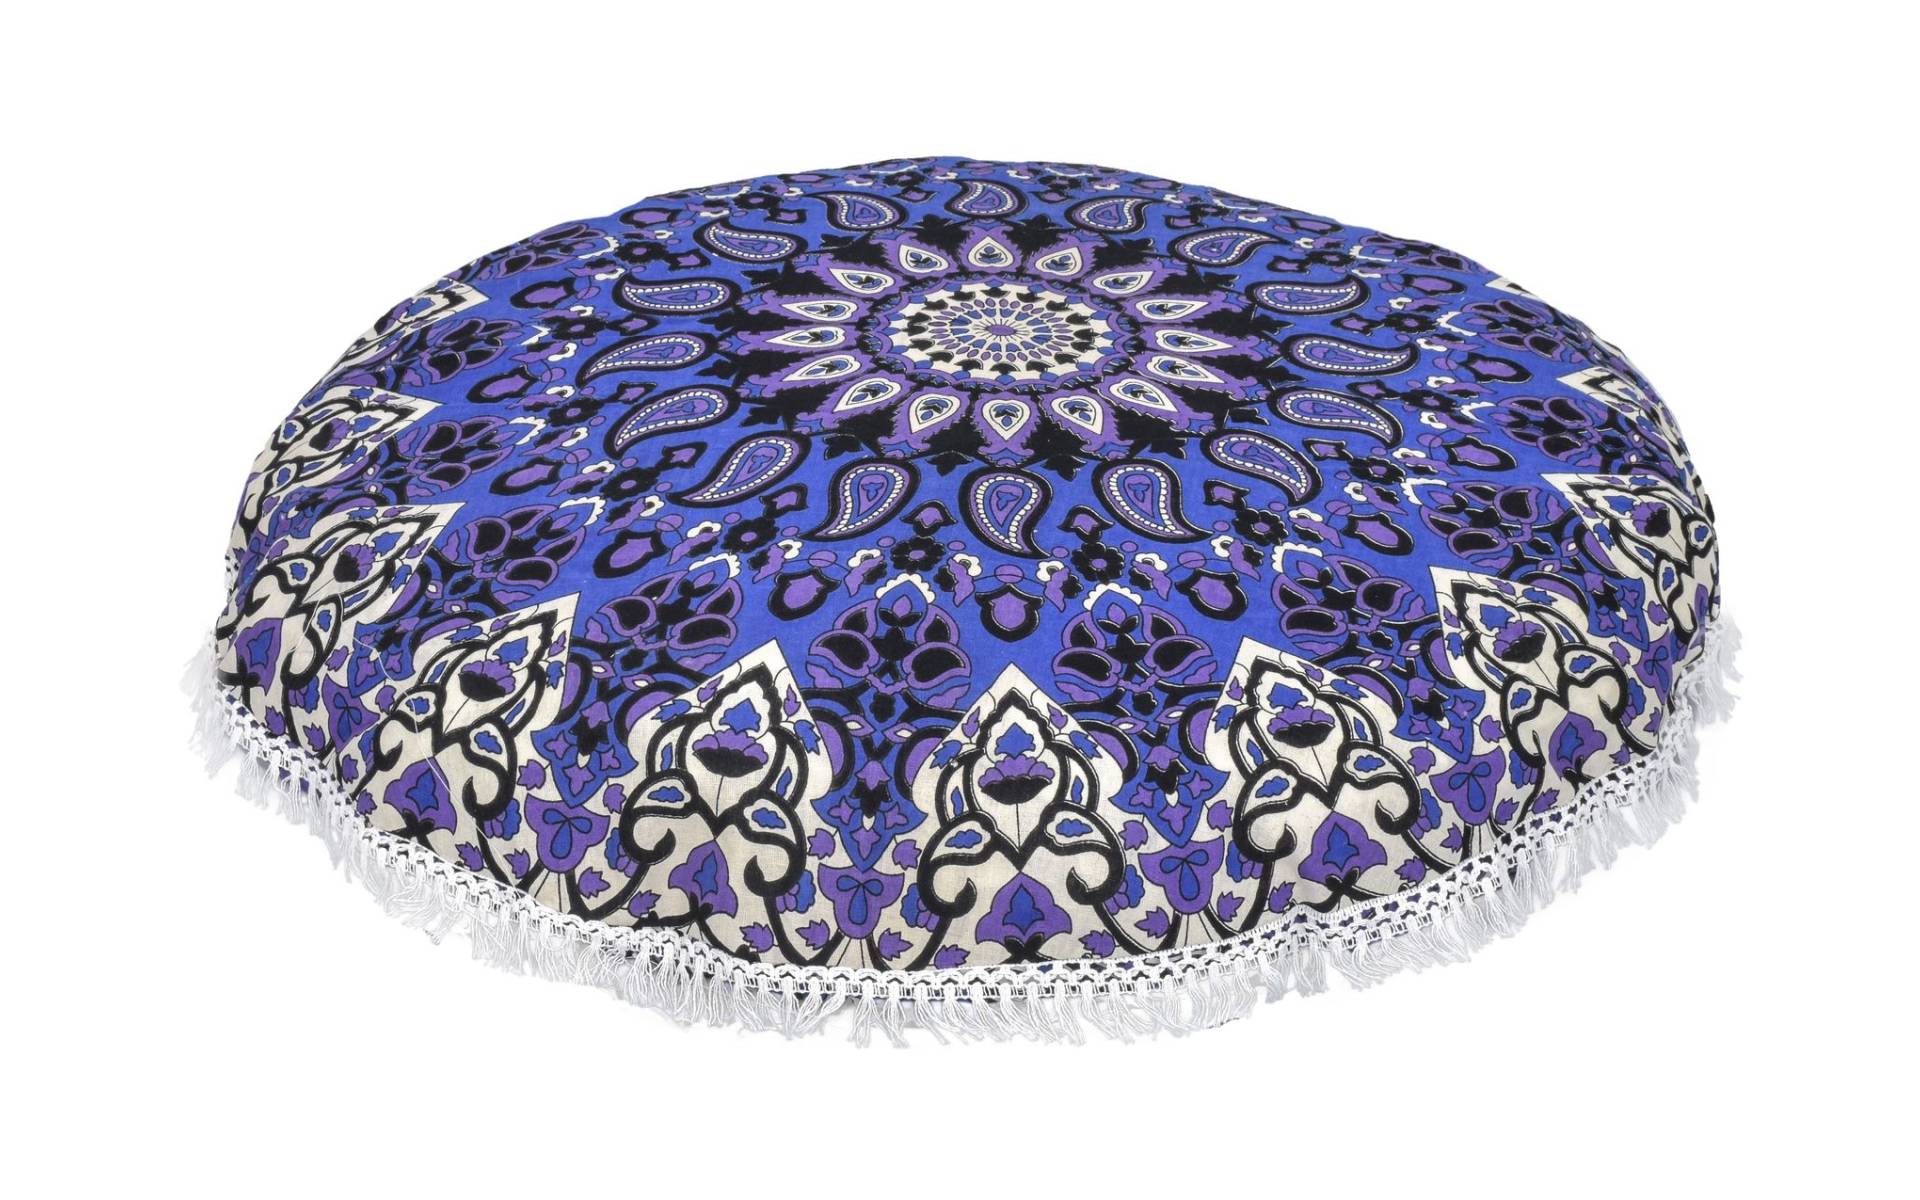 Meditačný vankúš, okrúhly, 80x13cm, modro-fialový, mandala, strapce